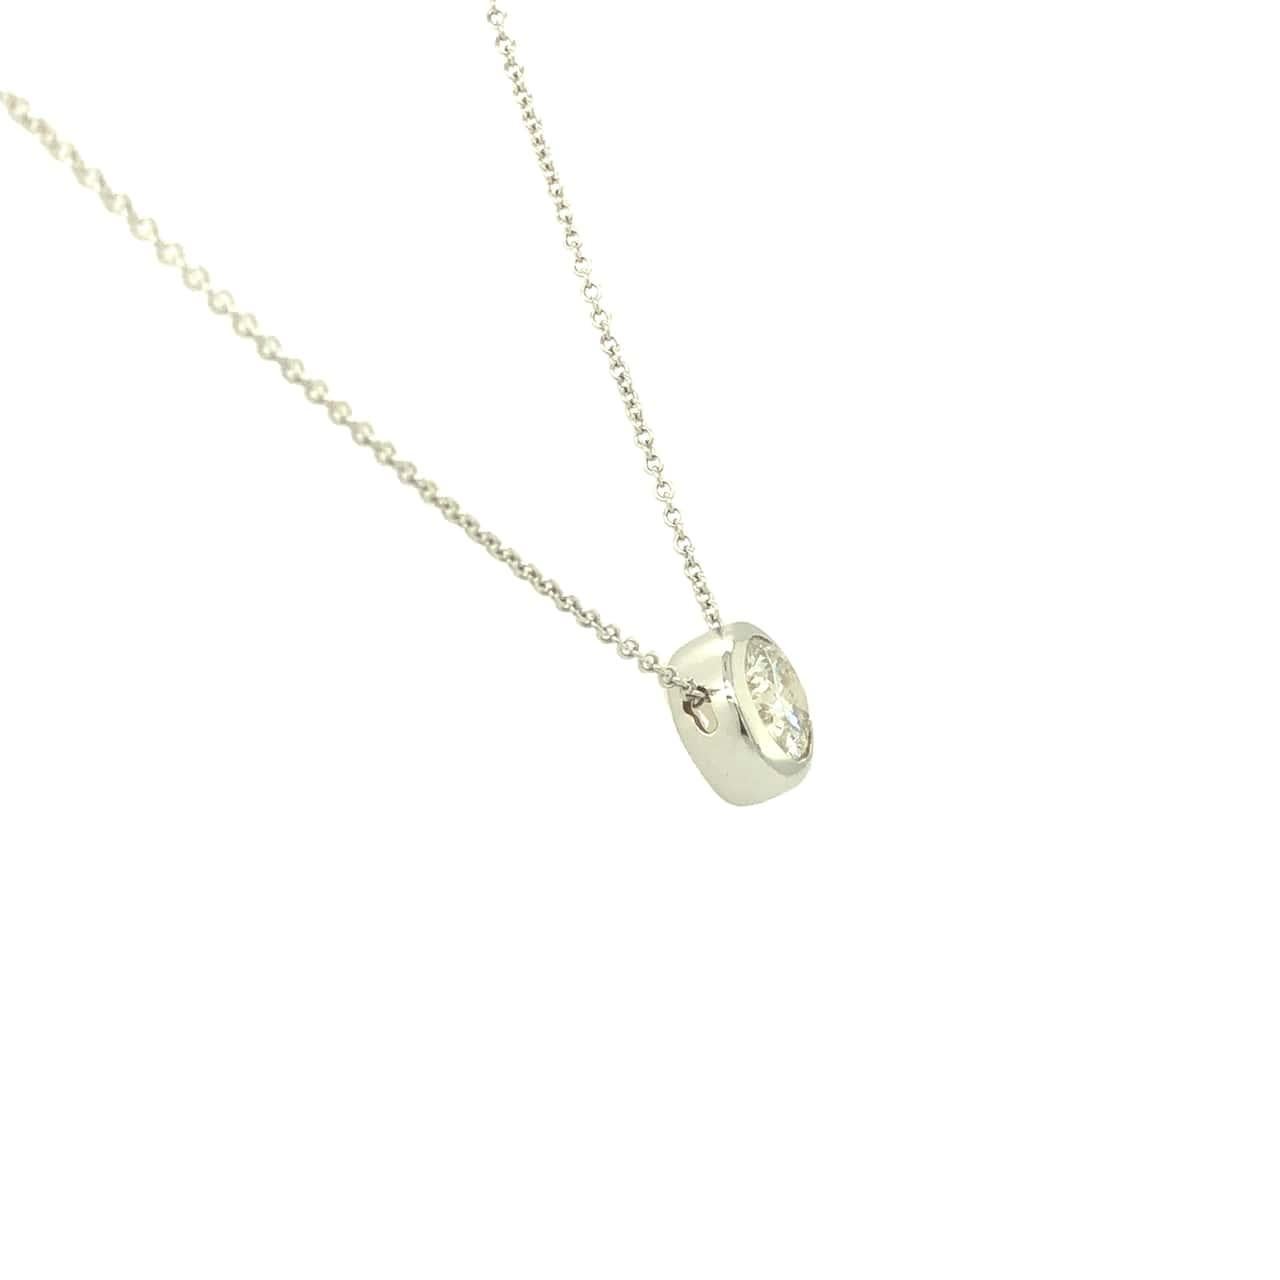 L'élégant collier de diamants solitaires est composé d'un diamant de 1,28 carat, de couleur G et de pureté VS. Le pendentif glisse de façon ludique sur une chaîne simple en or blanc 18 carats. Magnifiquement conçu et fini à Beverly Hills par notre